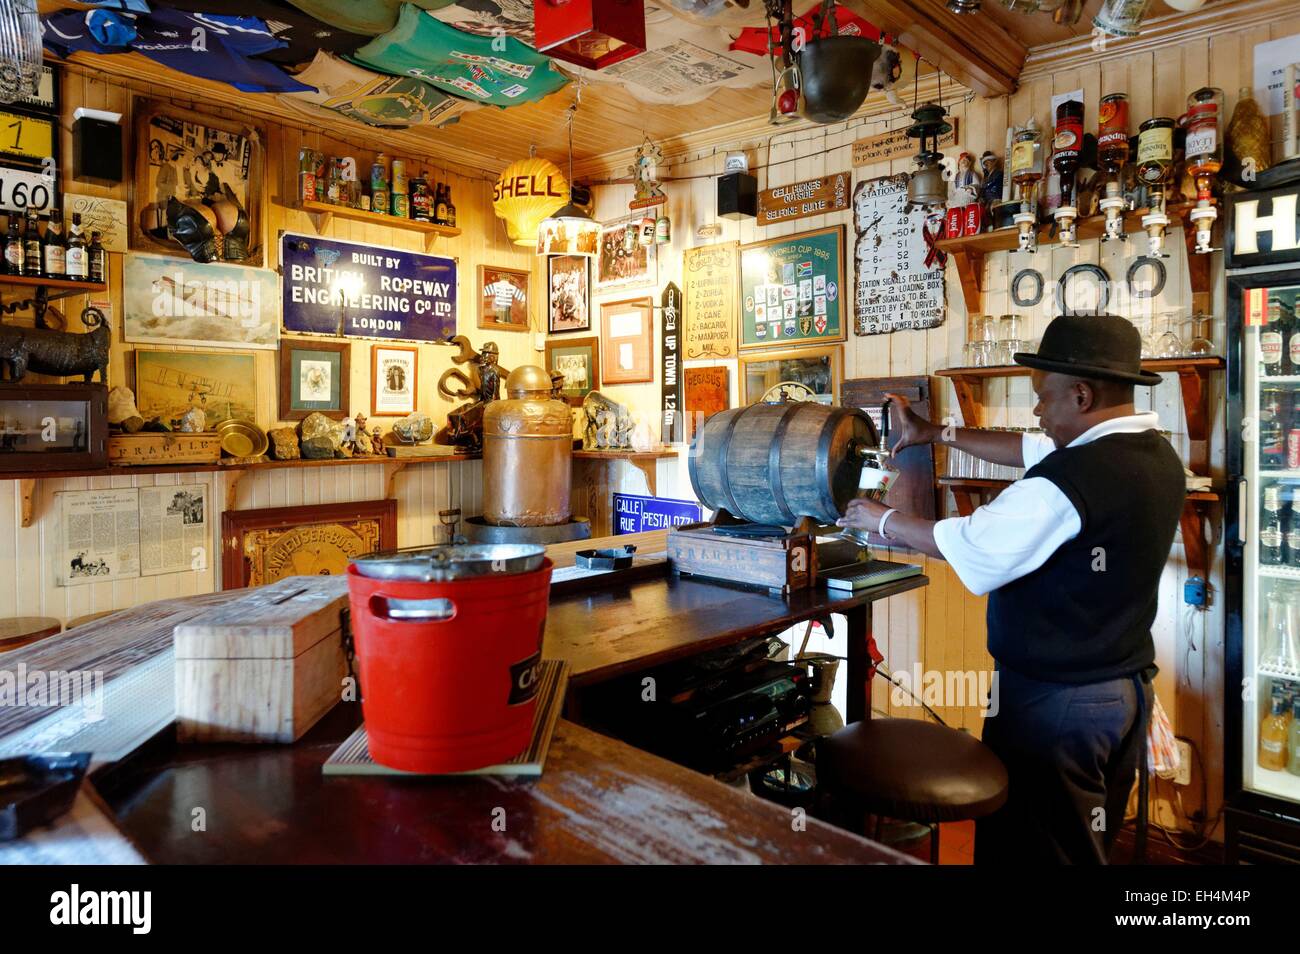 Sud Africa - Mpumalanga scarpata Drakensberg, pellegrini il resto è un antico villaggio di cercatori d oro, restaurata e dichiarata monumento nazionale nel 1986, Johnny's Bar (Vite Pub) Foto Stock